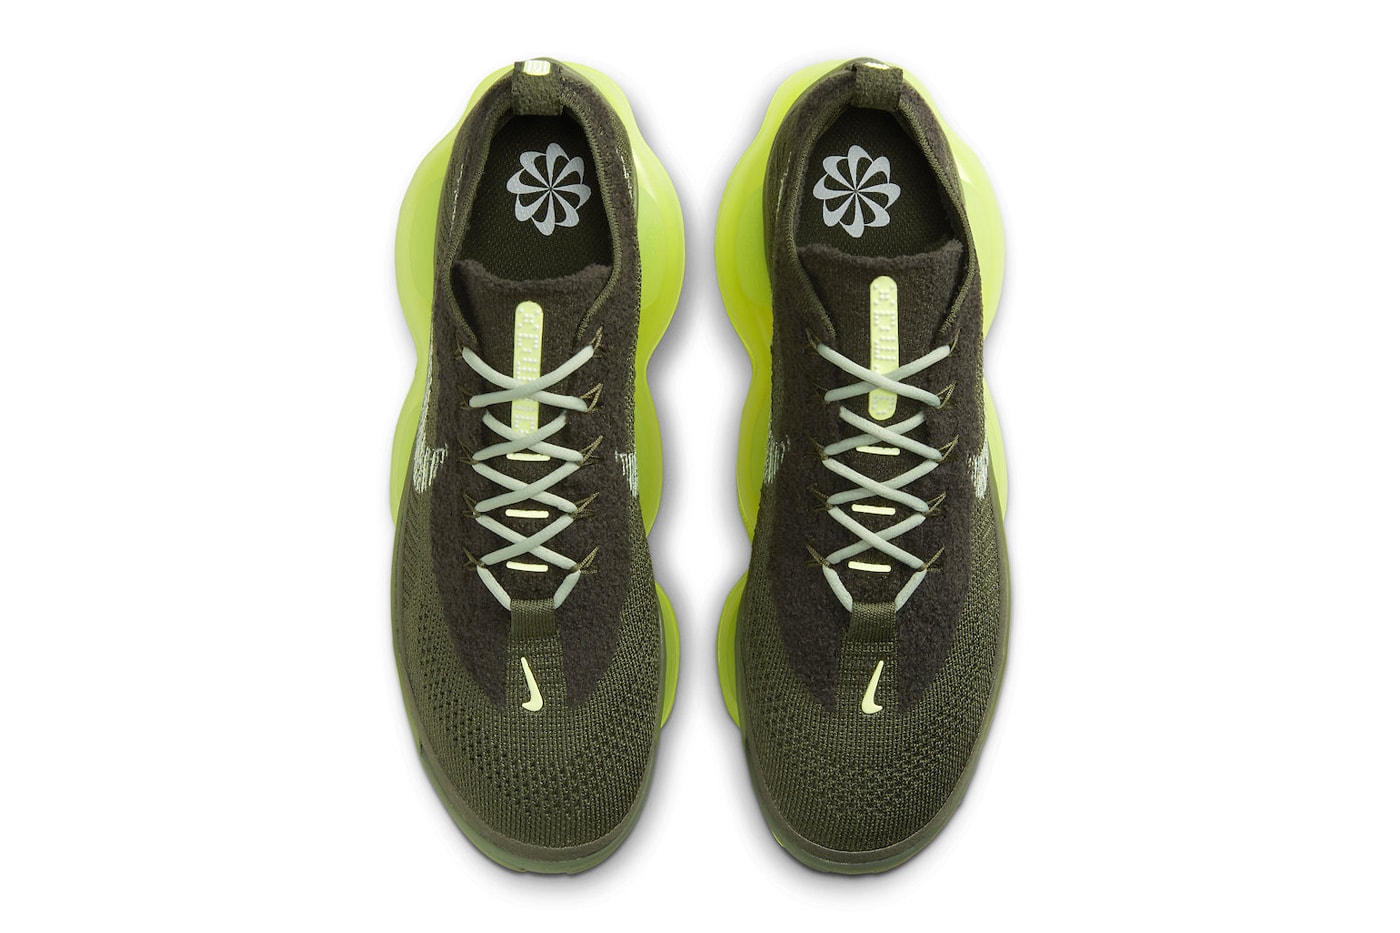 ナイキからネオンイエローのソールが目を惹くエアマックススコーピオン “ベアリーボルト”が登場 Nike Air Max Scorpion "Barely Volt" Receives a Release Date DJ4701-300 Jade Horizon/Barely Volt-Cargo Khaki-Sequoia snaekers show flyknit bubble